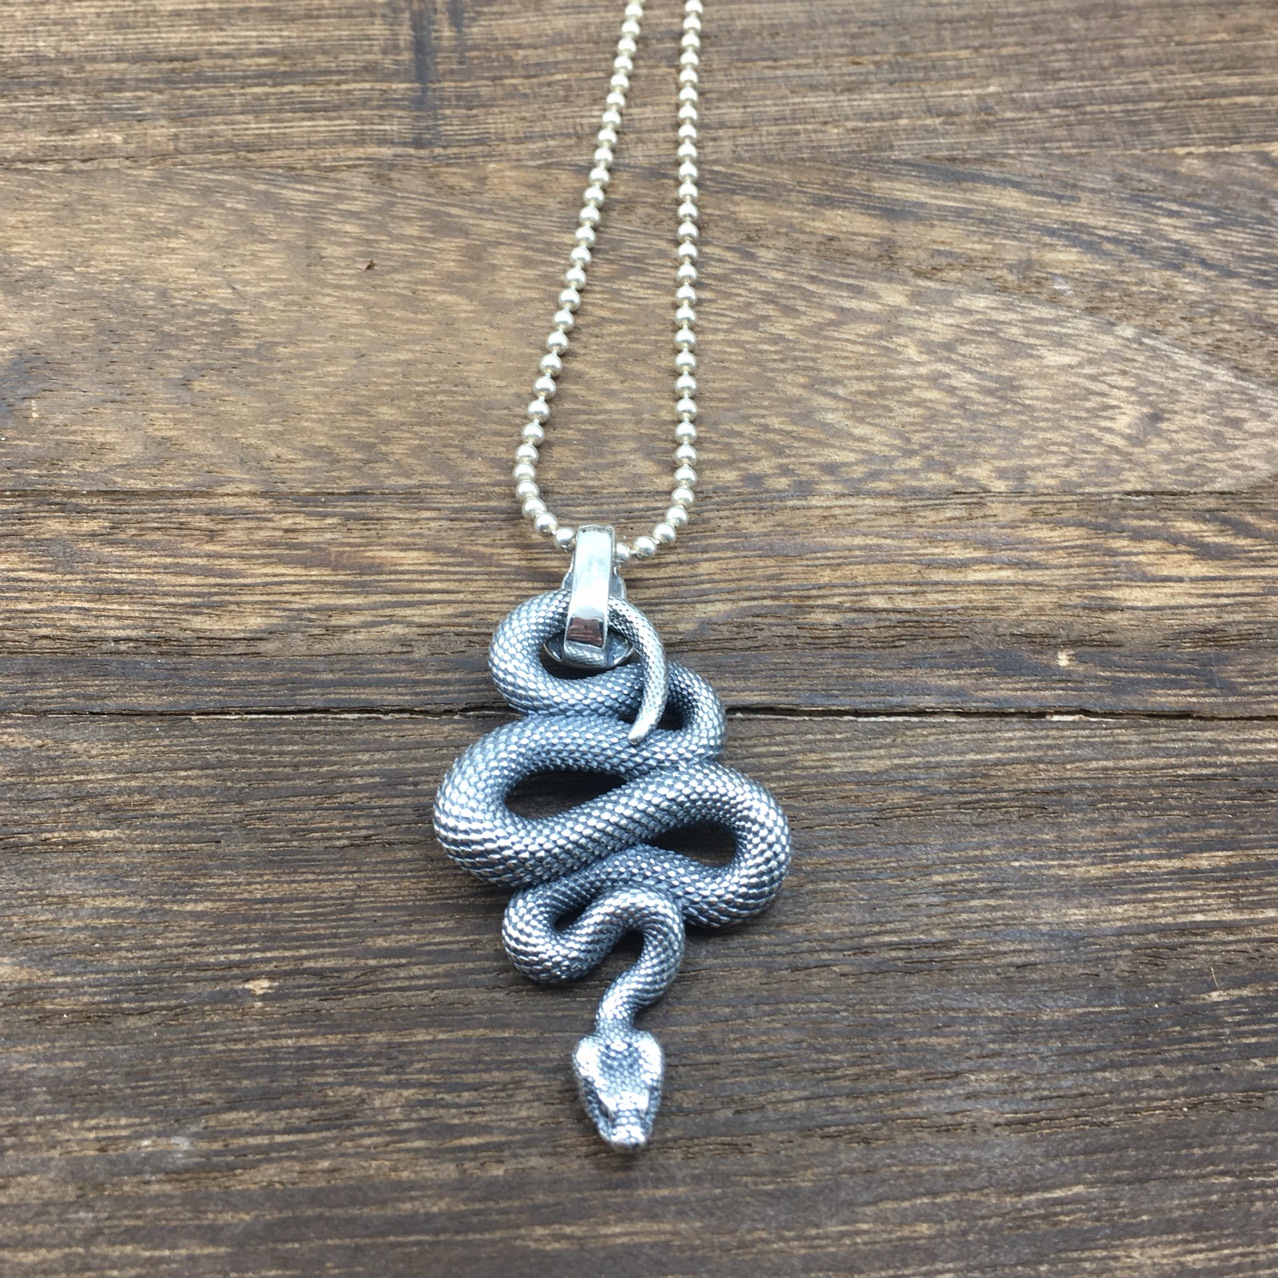 "Unique Python Element on Mens Silver Pendant"